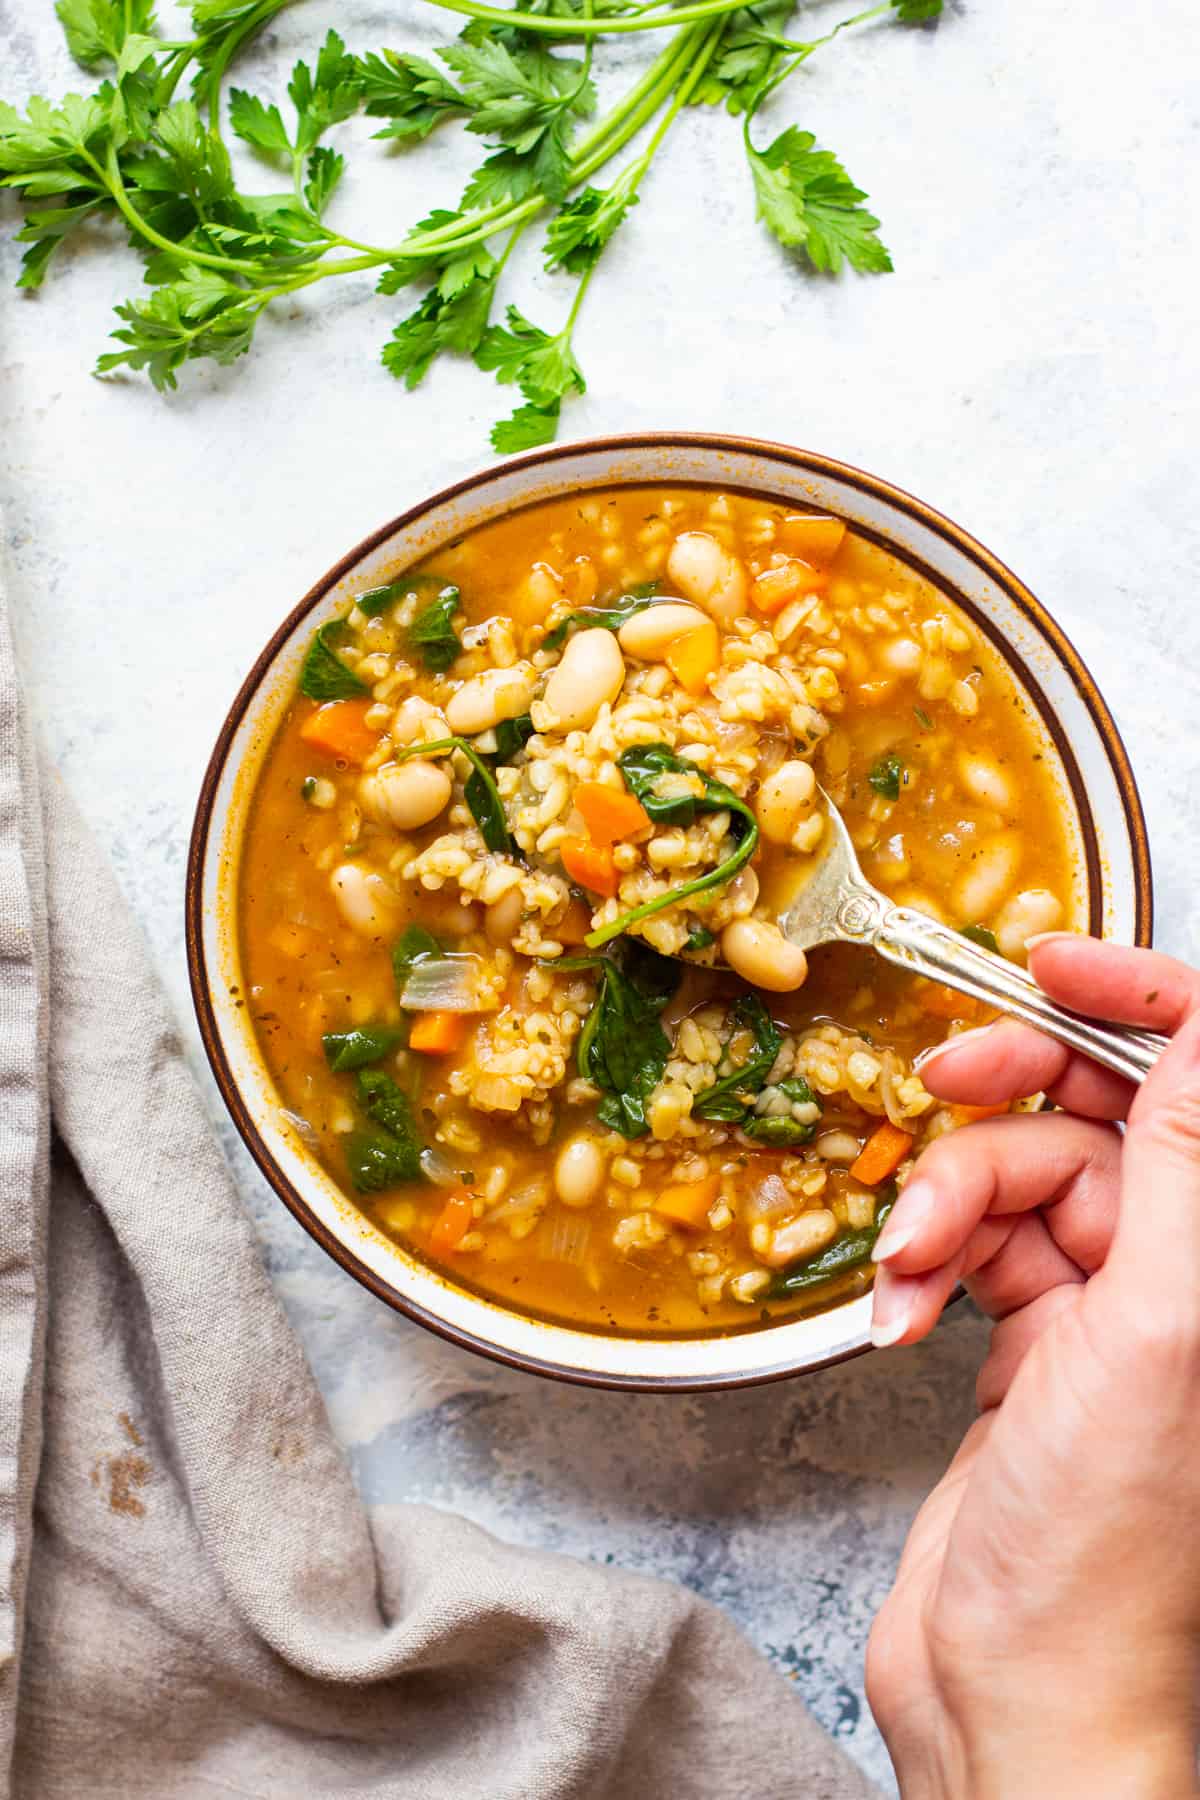 Instant pot vegetable soup
